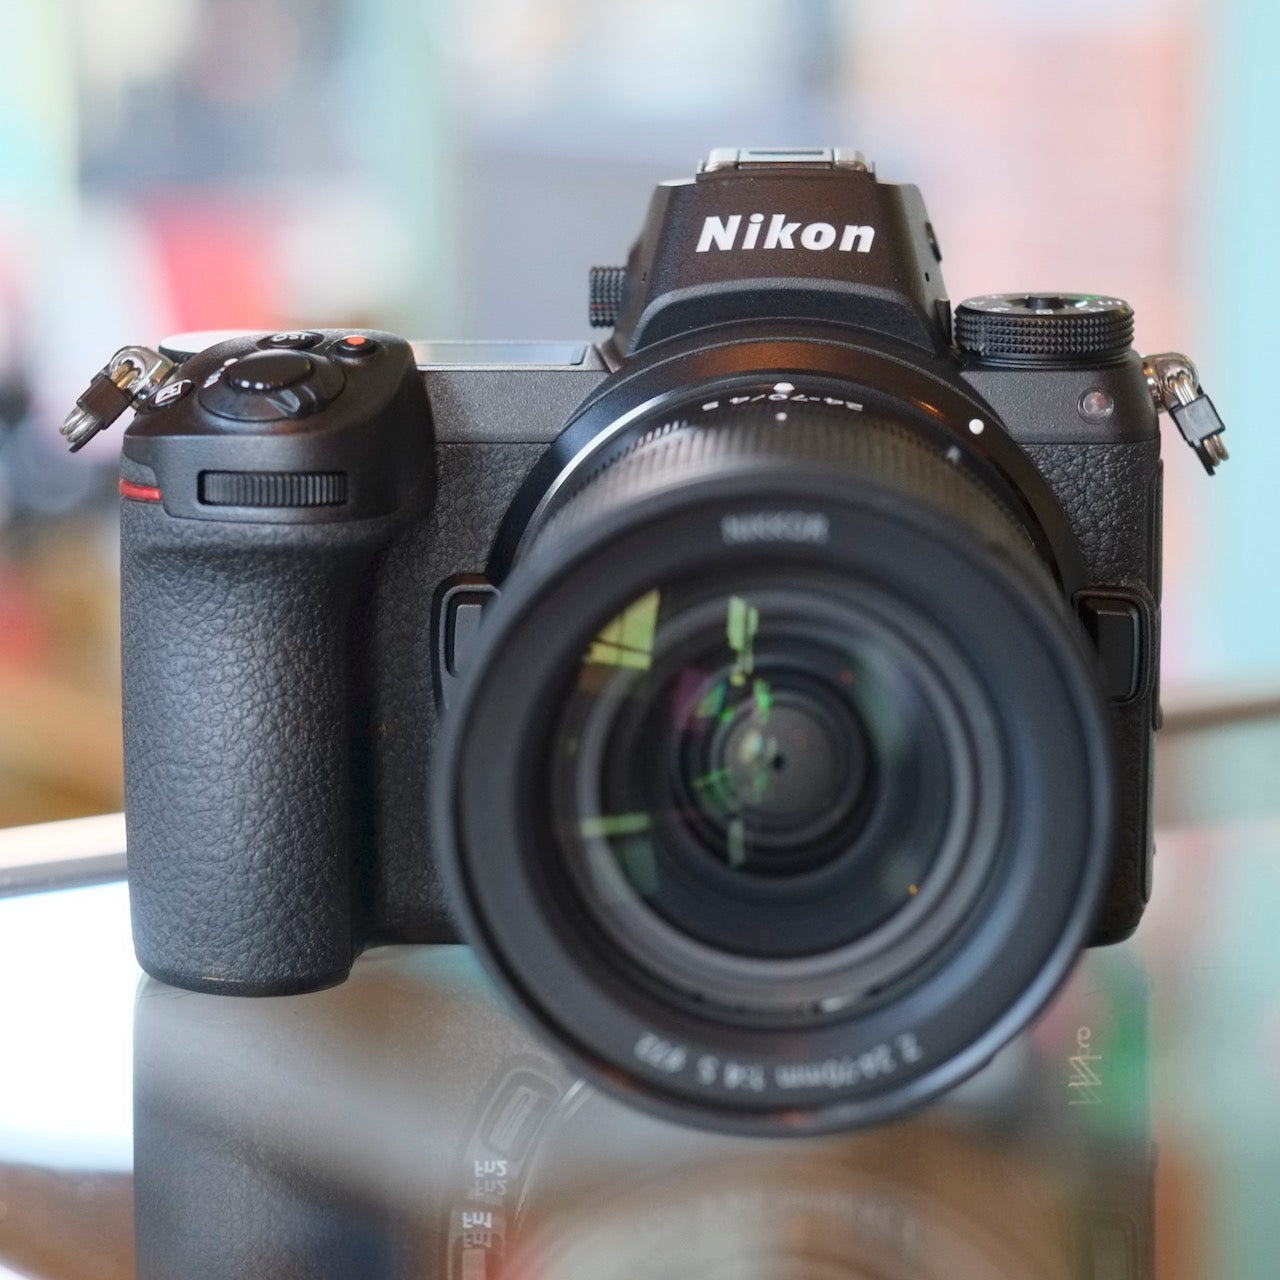 Nikon Z6 with Nikkor Z 24-70mm f4 S